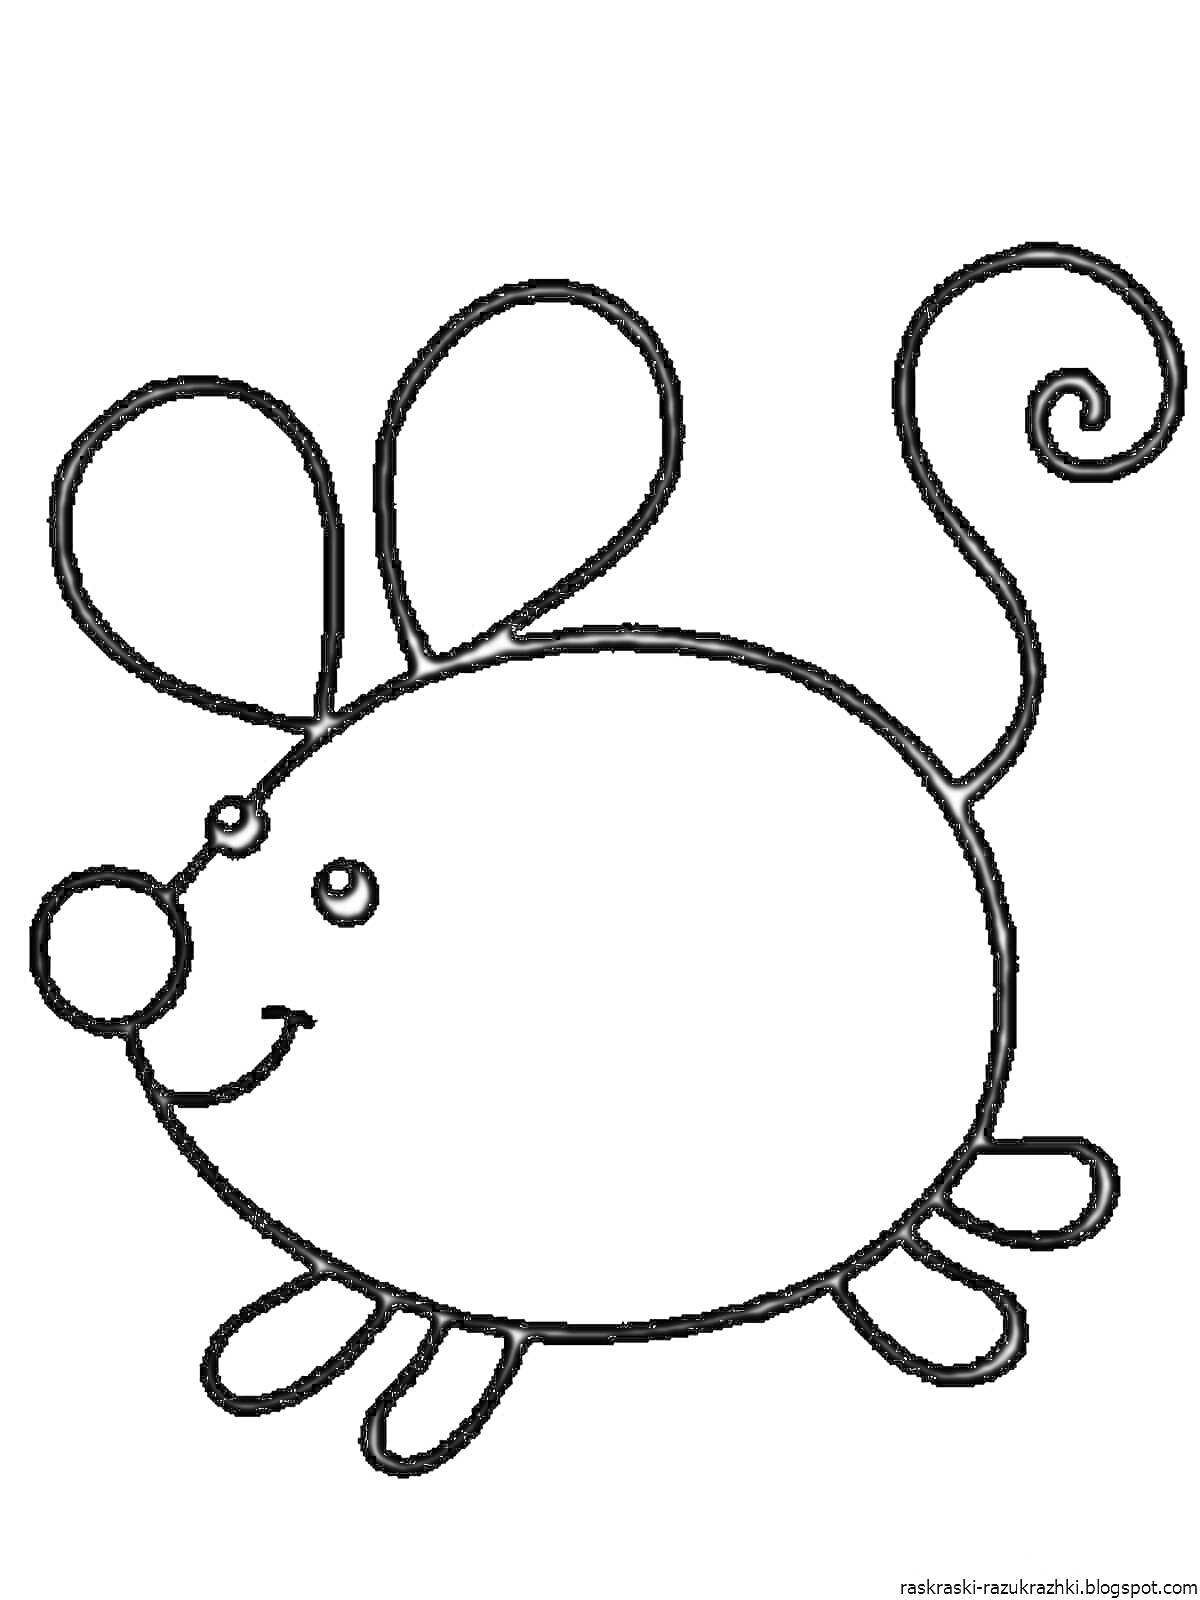 Раскраска Мышка с большими ушами и закрученным хвостиком